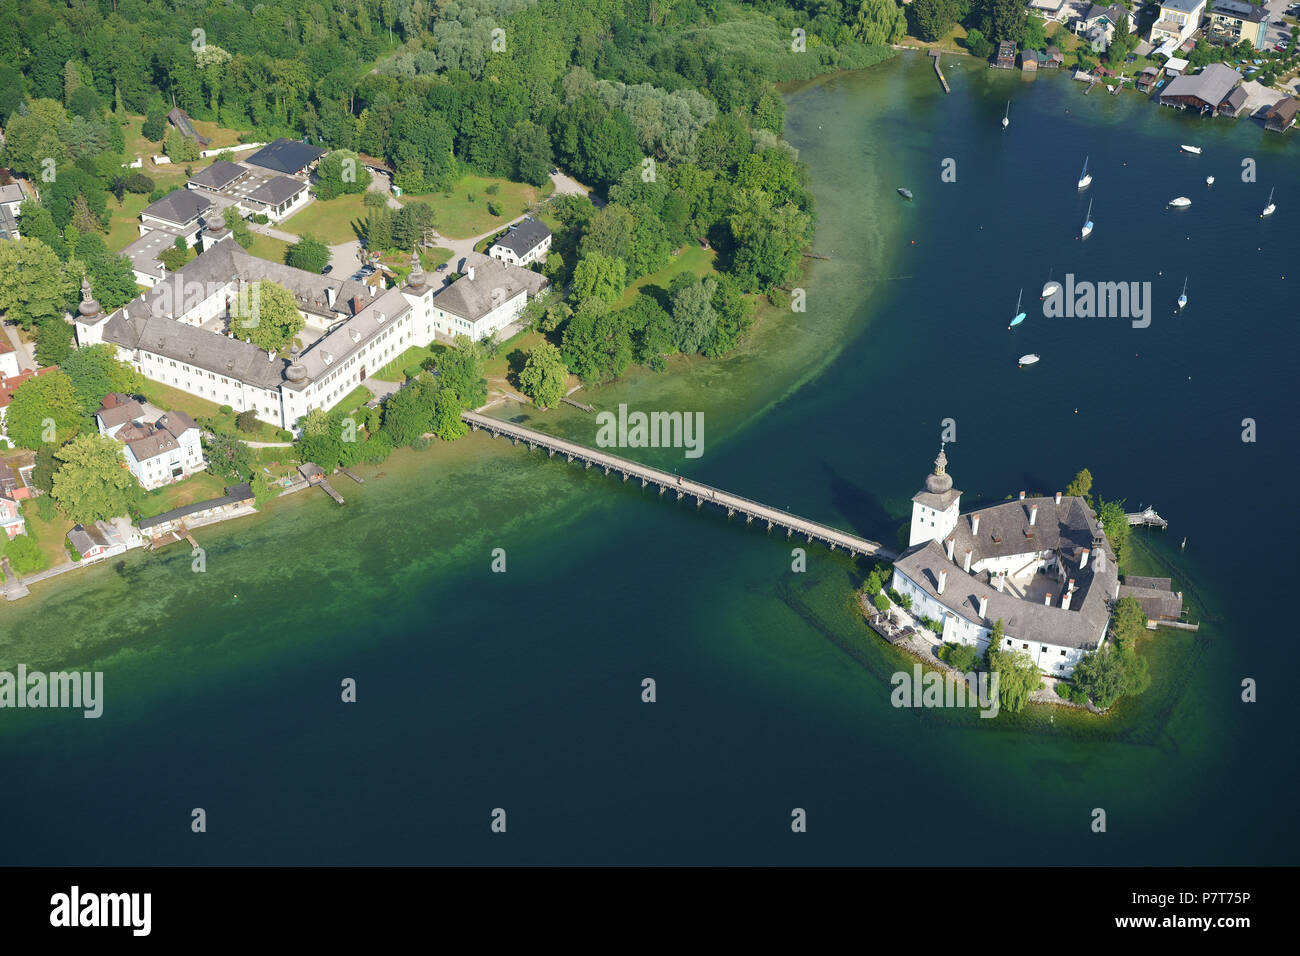 VUE AÉRIENNE. Château médiéval sur un lac avec une passerelle d'accès. Château de ORT, Gmunden, Traunsee (lac), haute-Autriche, Autriche. Banque D'Images